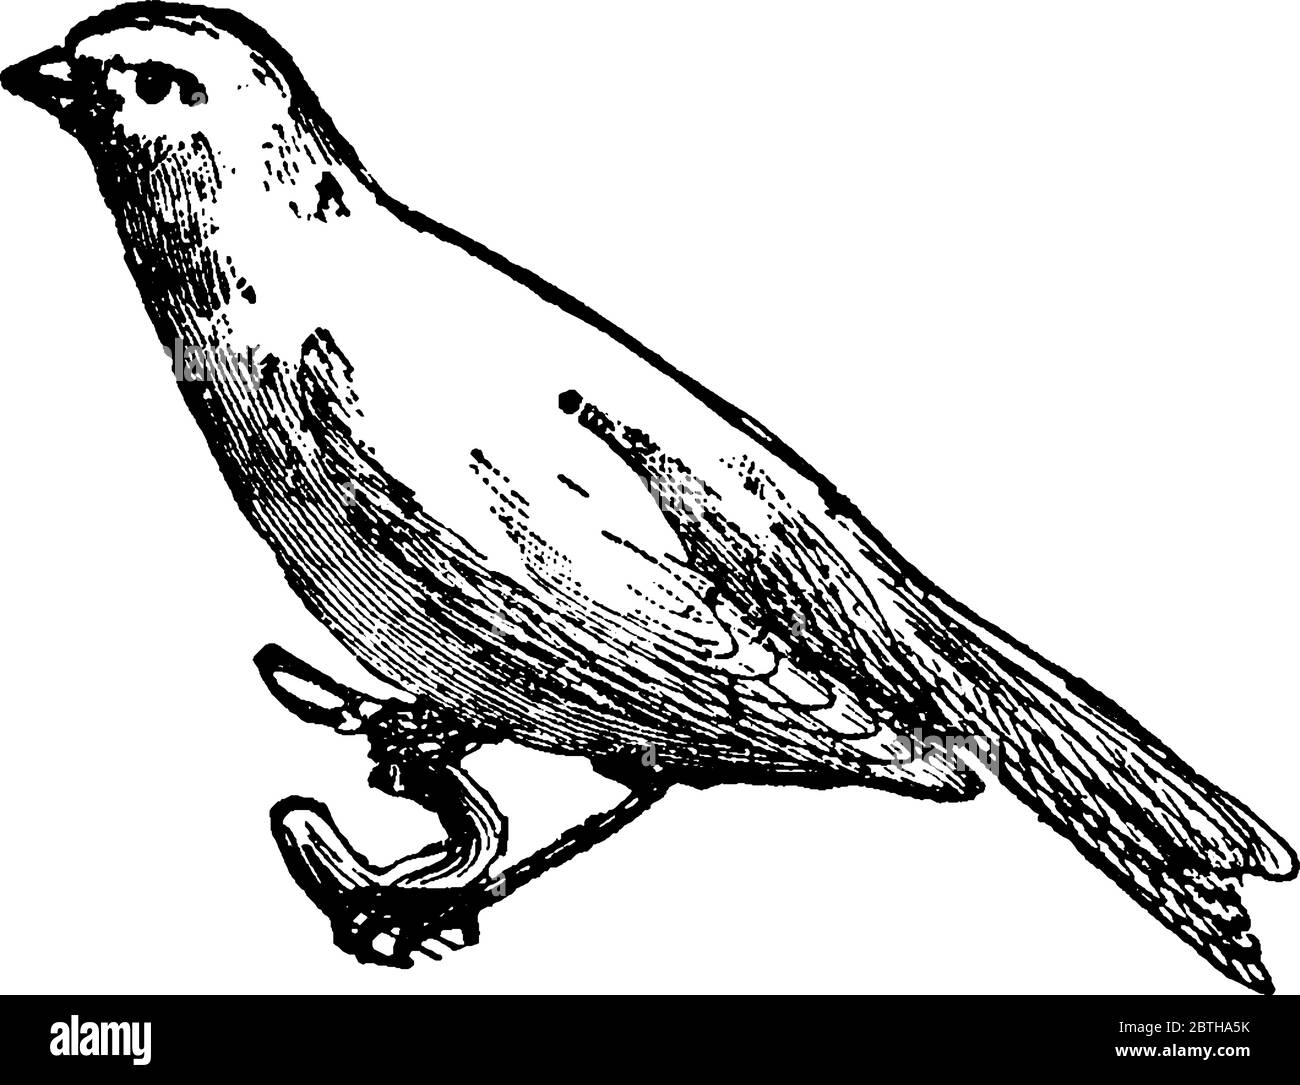 Gli uccelli canarini sono piccoli uccelli songbirds gialli della famiglia delle finche, disegno di linea d'epoca o illustrazione dell'incisione Illustrazione Vettoriale